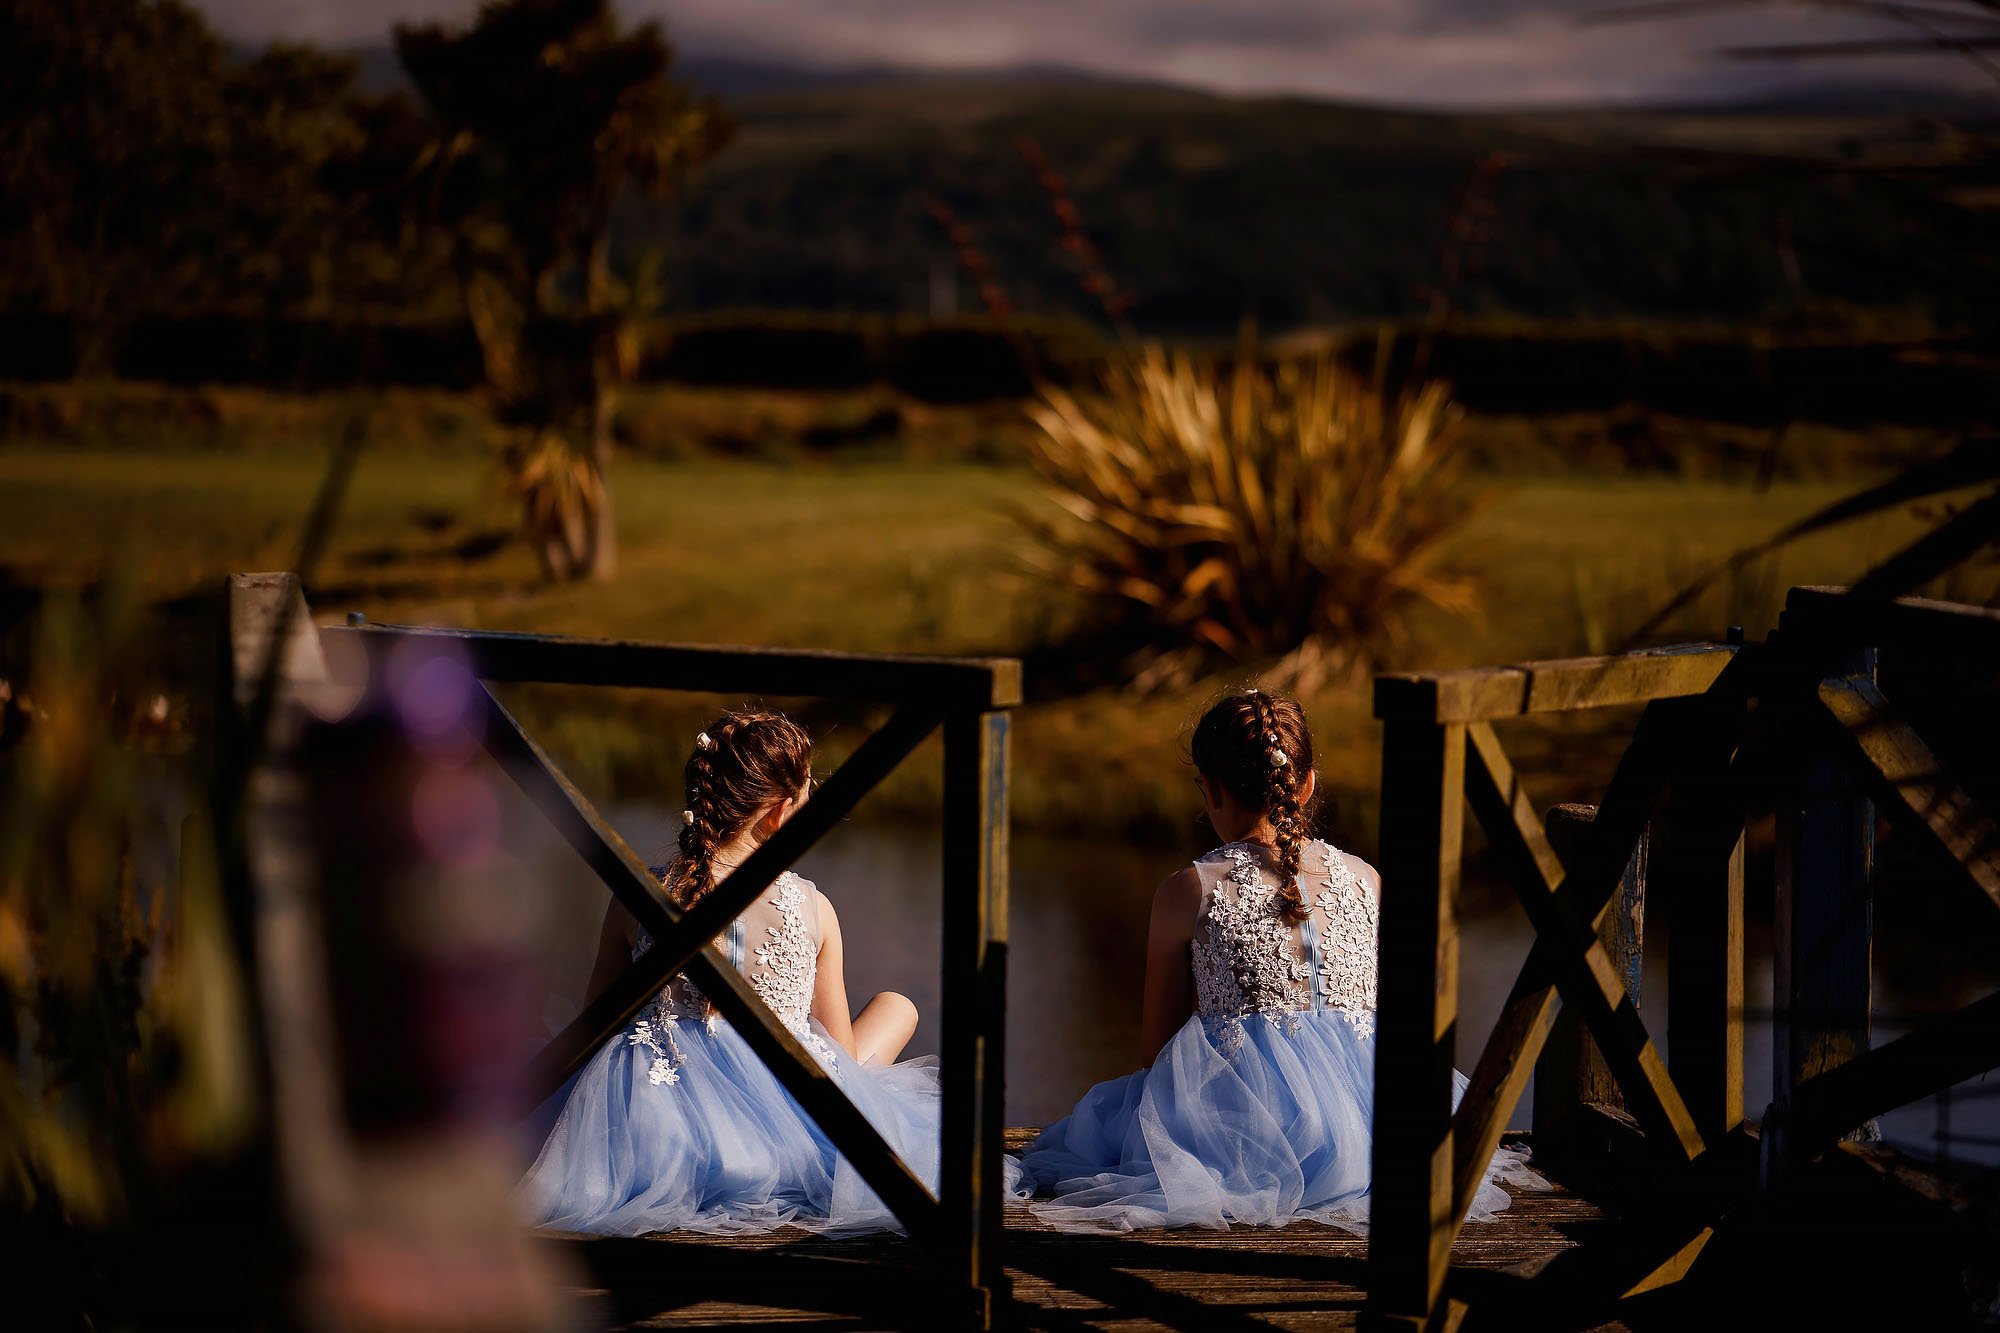 Isle of man weddings - arj photography®